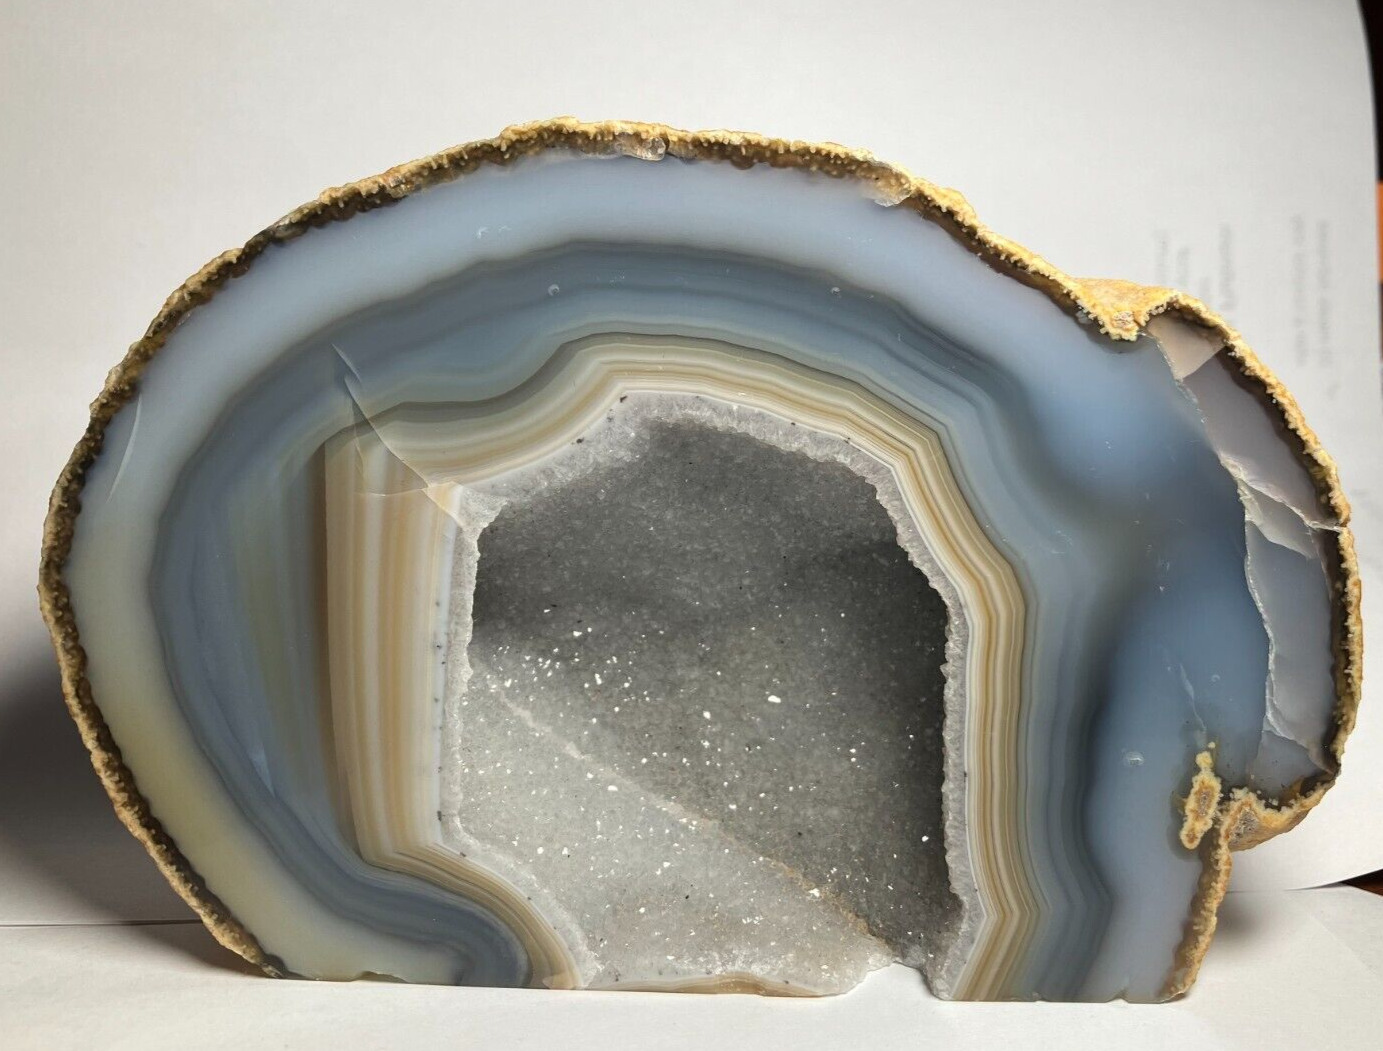 2.92 Lb. Agate Geode with Quartz Cavern